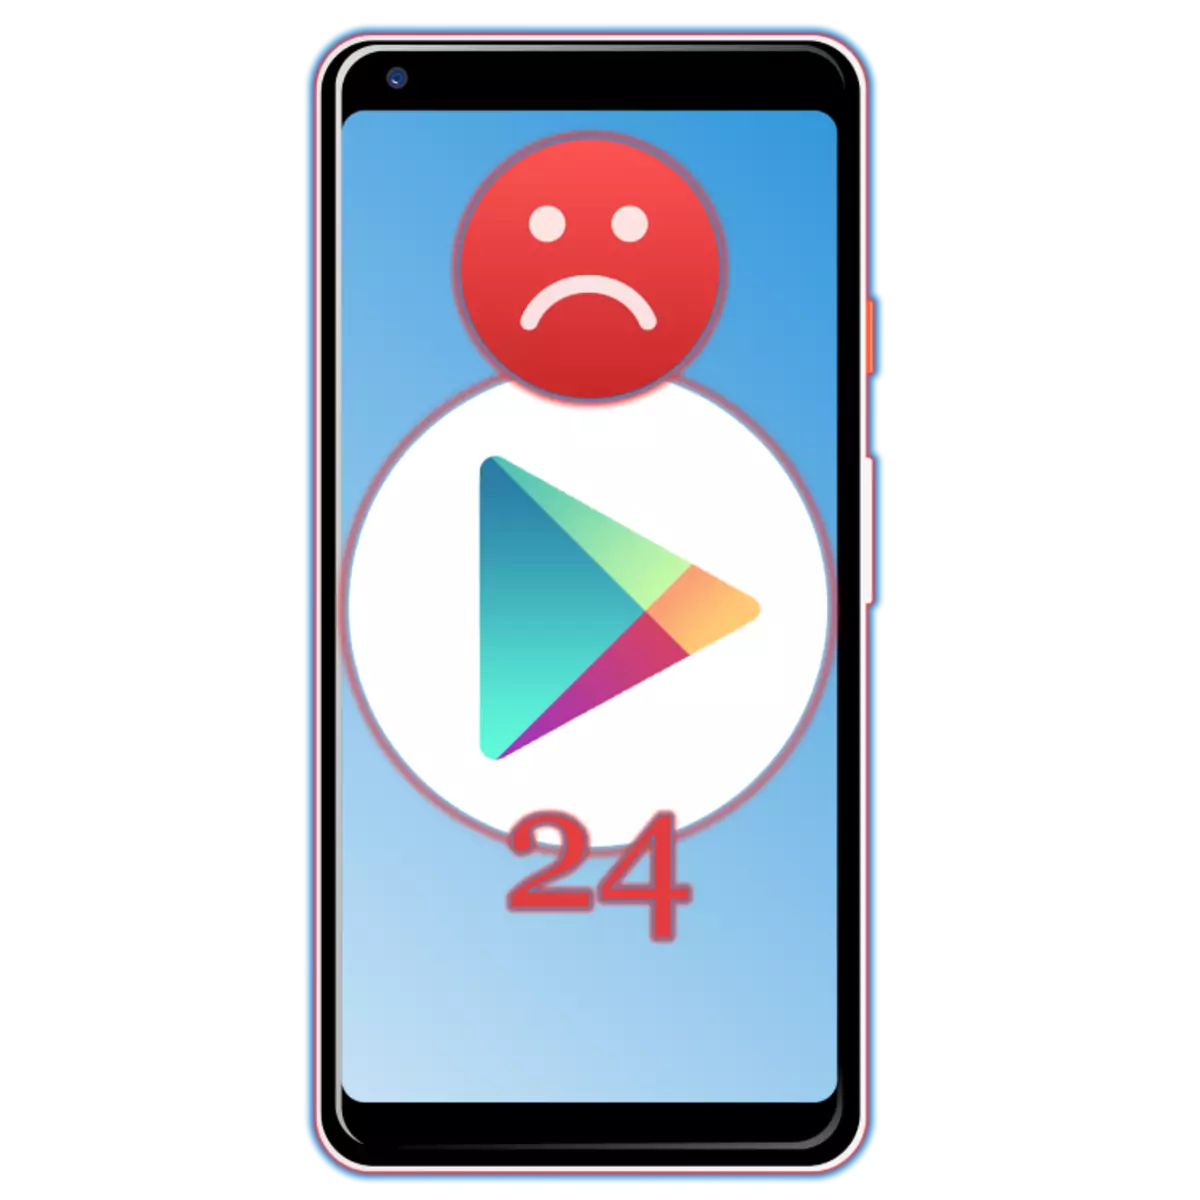 ຂໍ້ຜິດພາດ 24 ເມື່ອຕິດຕັ້ງແອັບພລິເຄຊັນໃນ Android